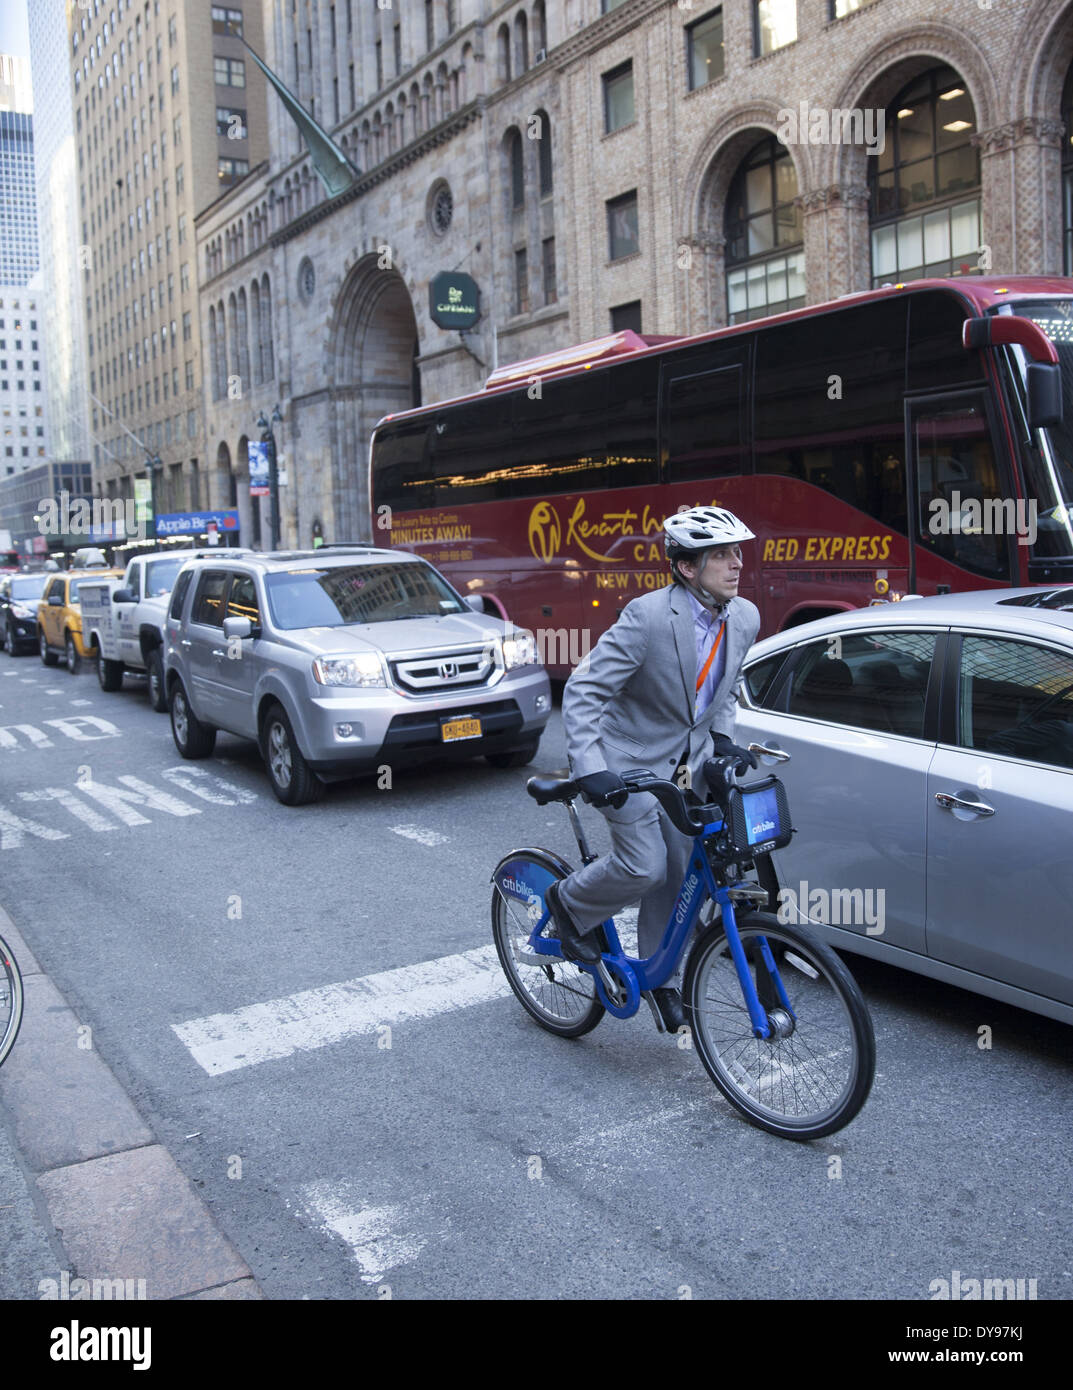 L'homme monte un vélo Citi pour battre le trafic sur 42nd Street à Manhattan, l'un des centres urbains les plus congestionnées n'importe où. NYC. Banque D'Images